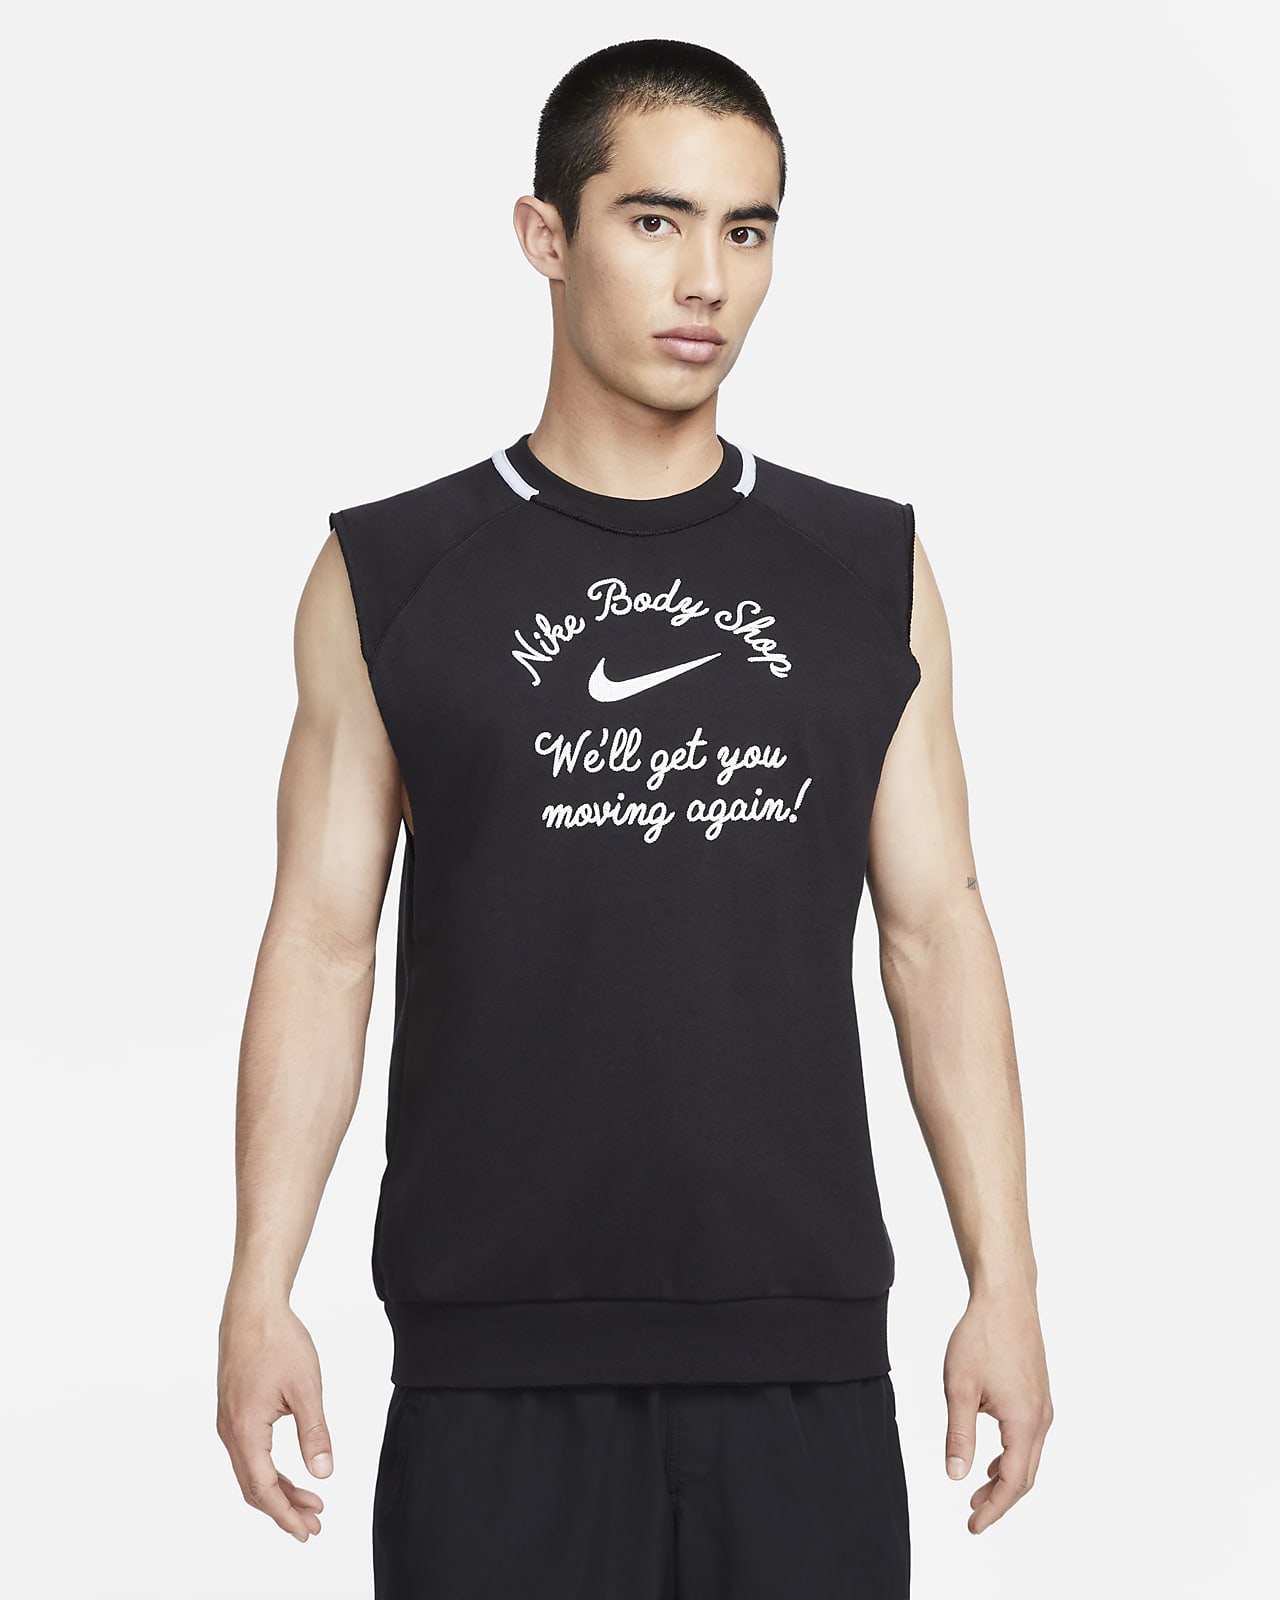 Nike Men's Tanktop Festival Muscle Tank Top Shirt Sleeveless Sportswear ALL  NIKE